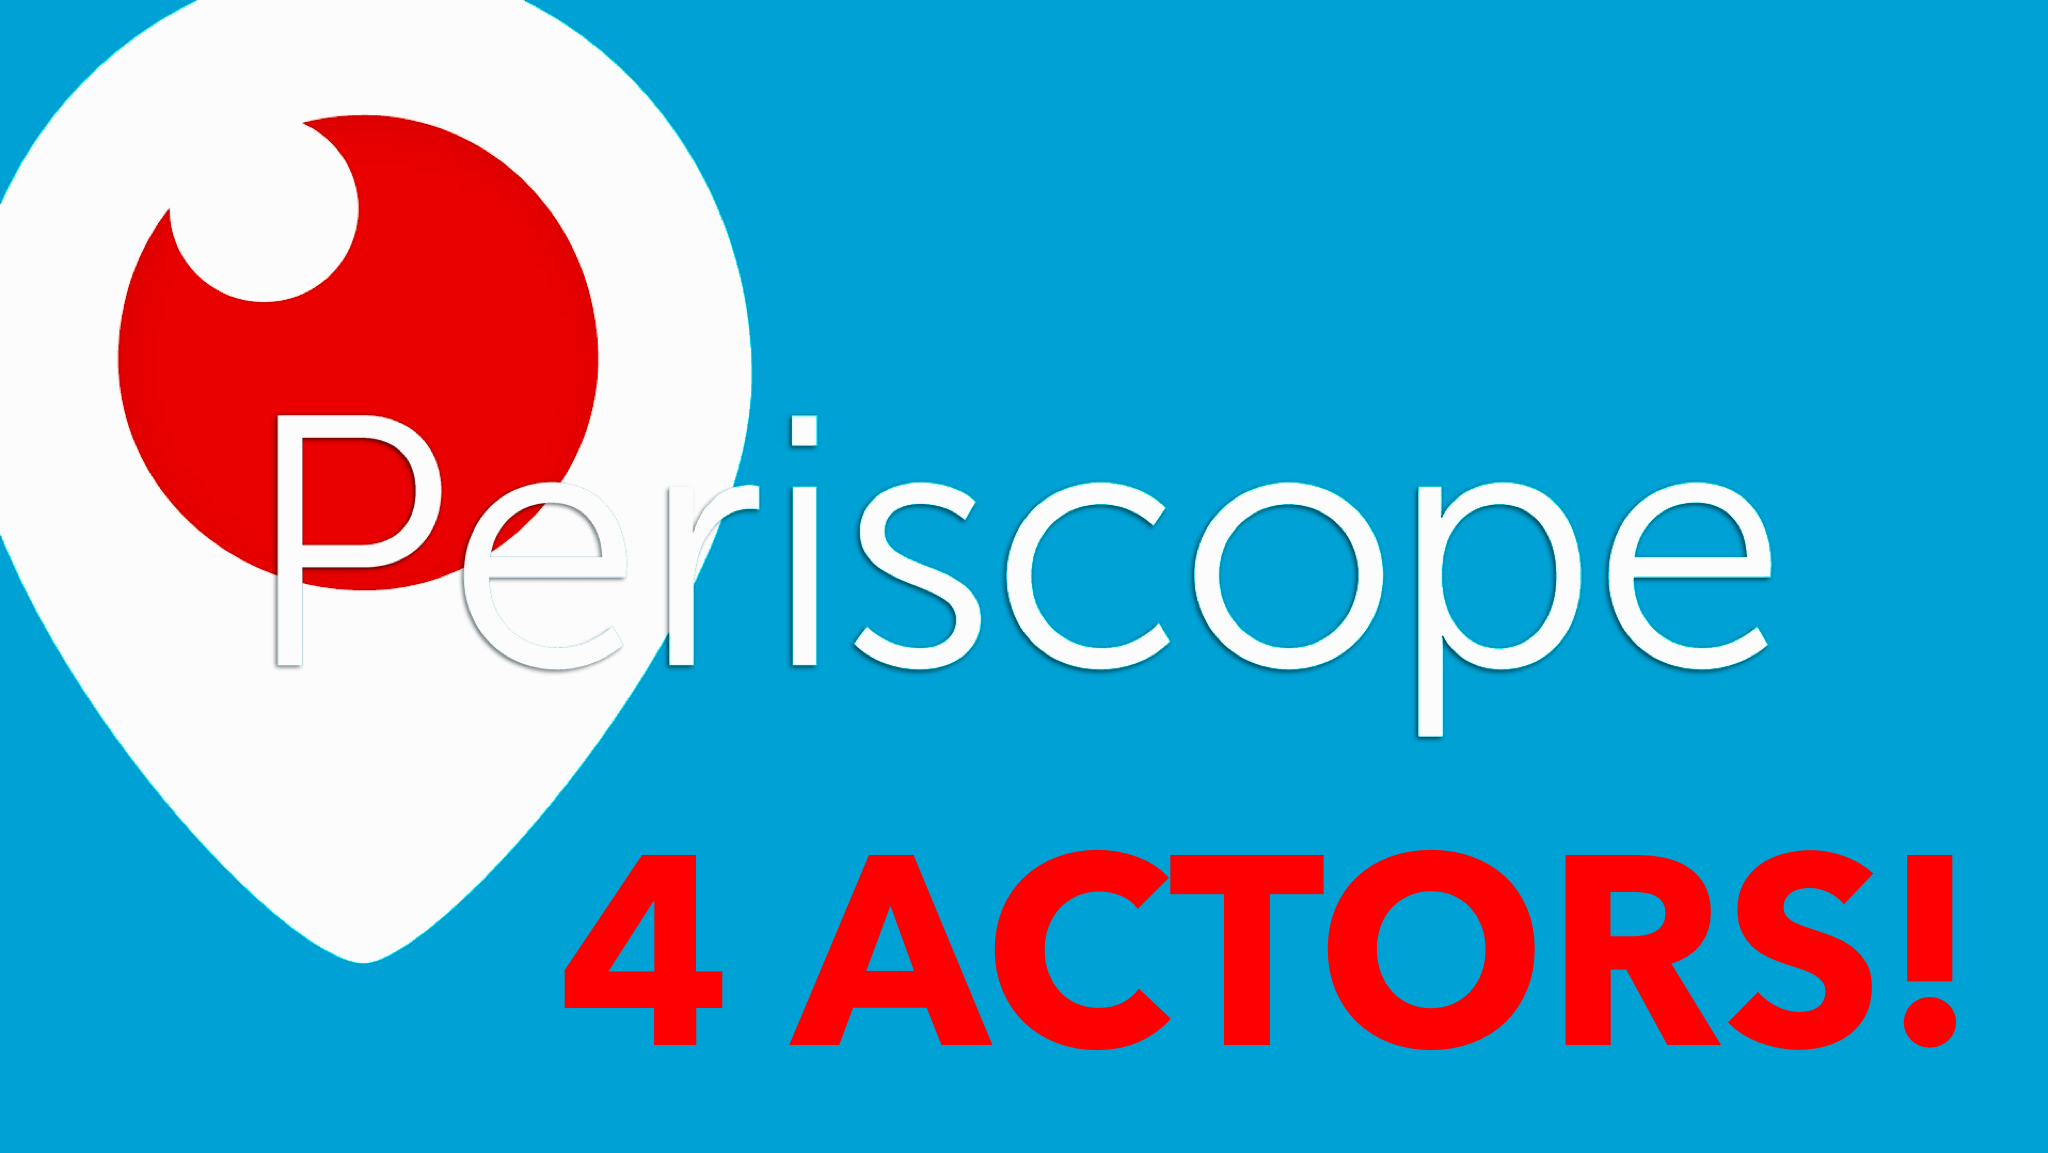 periscope 4 actors